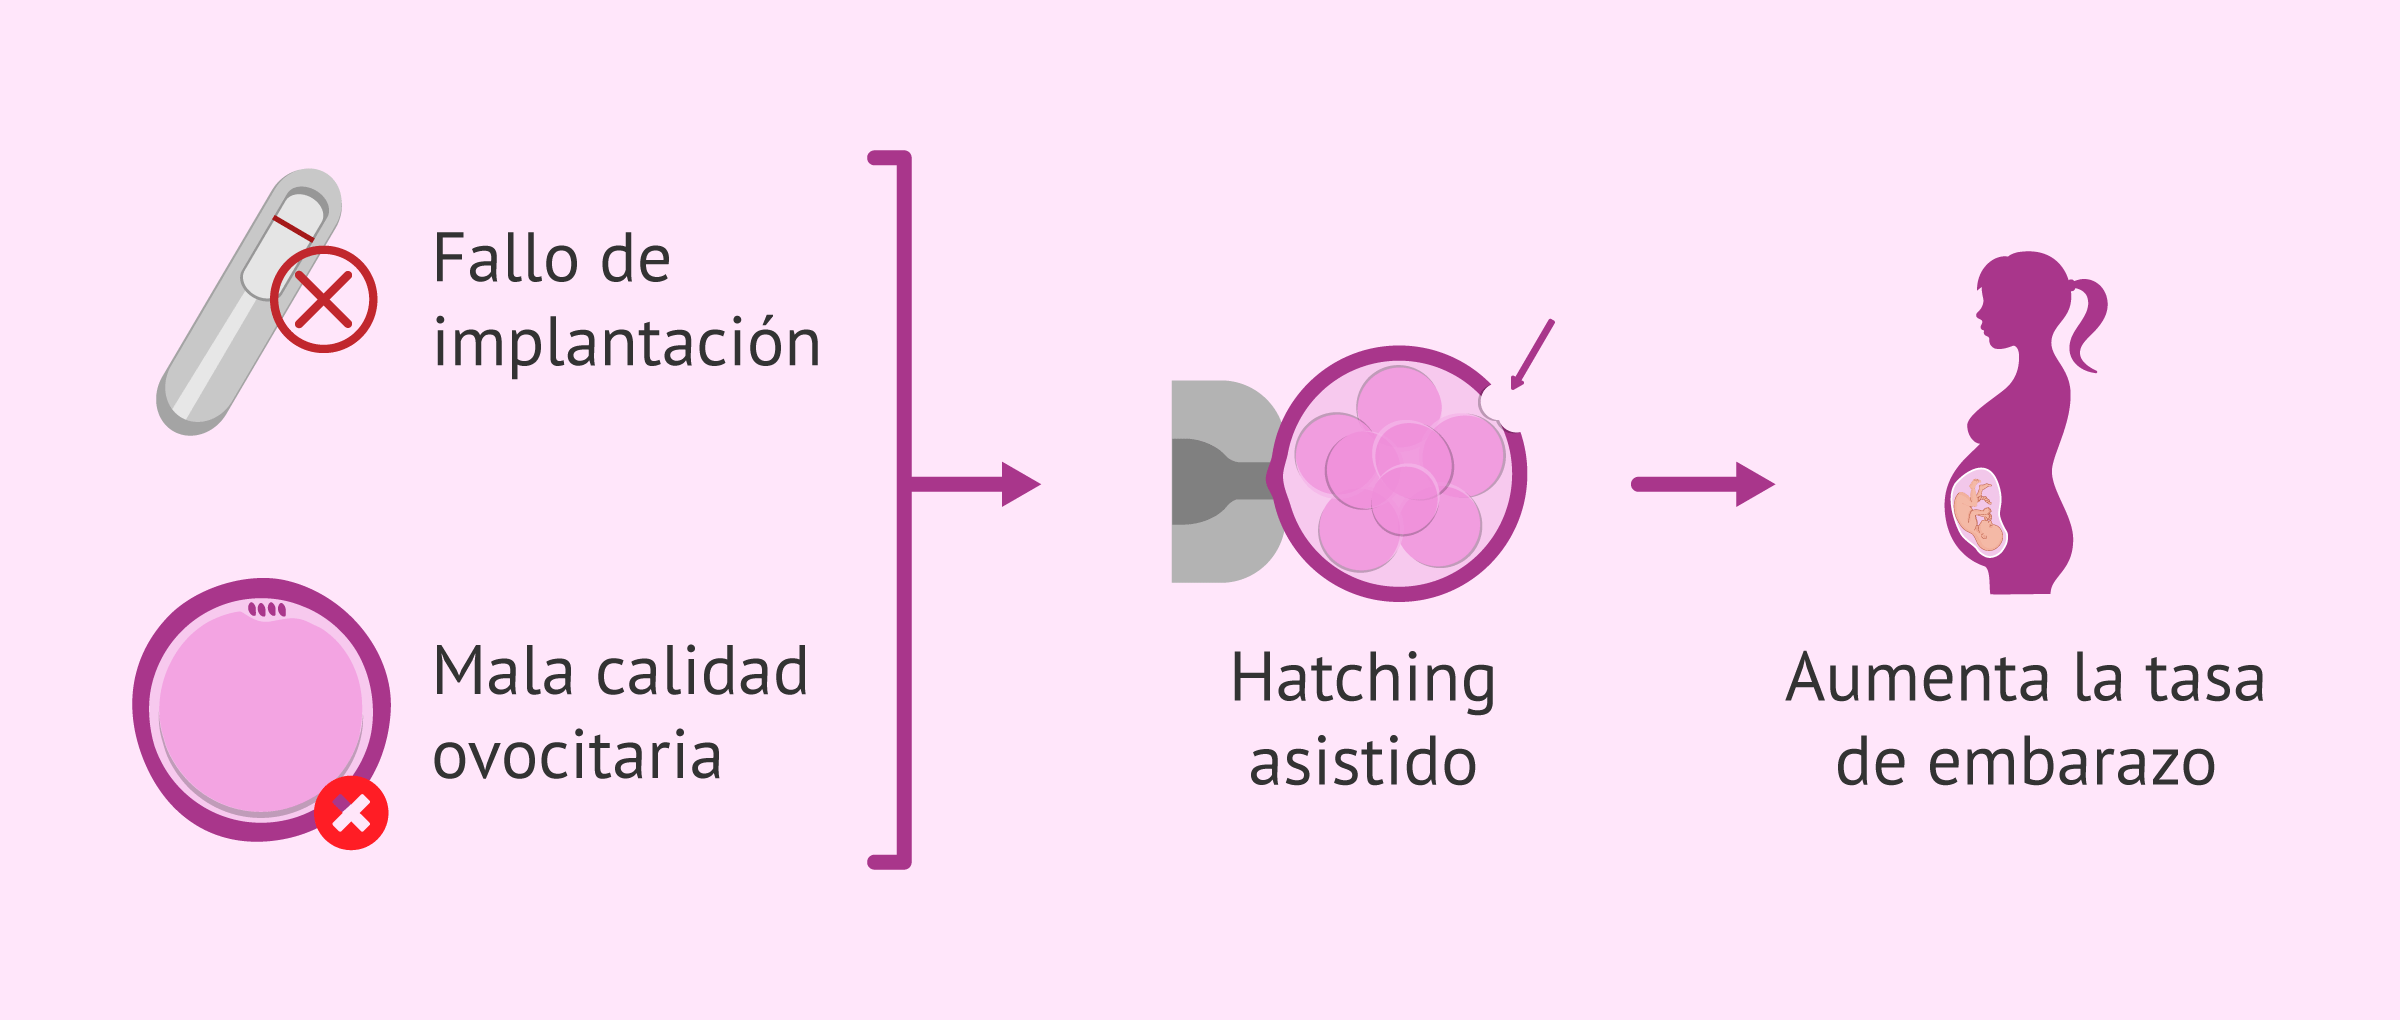 Imagen: ¿En qué casos tiene buenos resultados el hatching asistido?